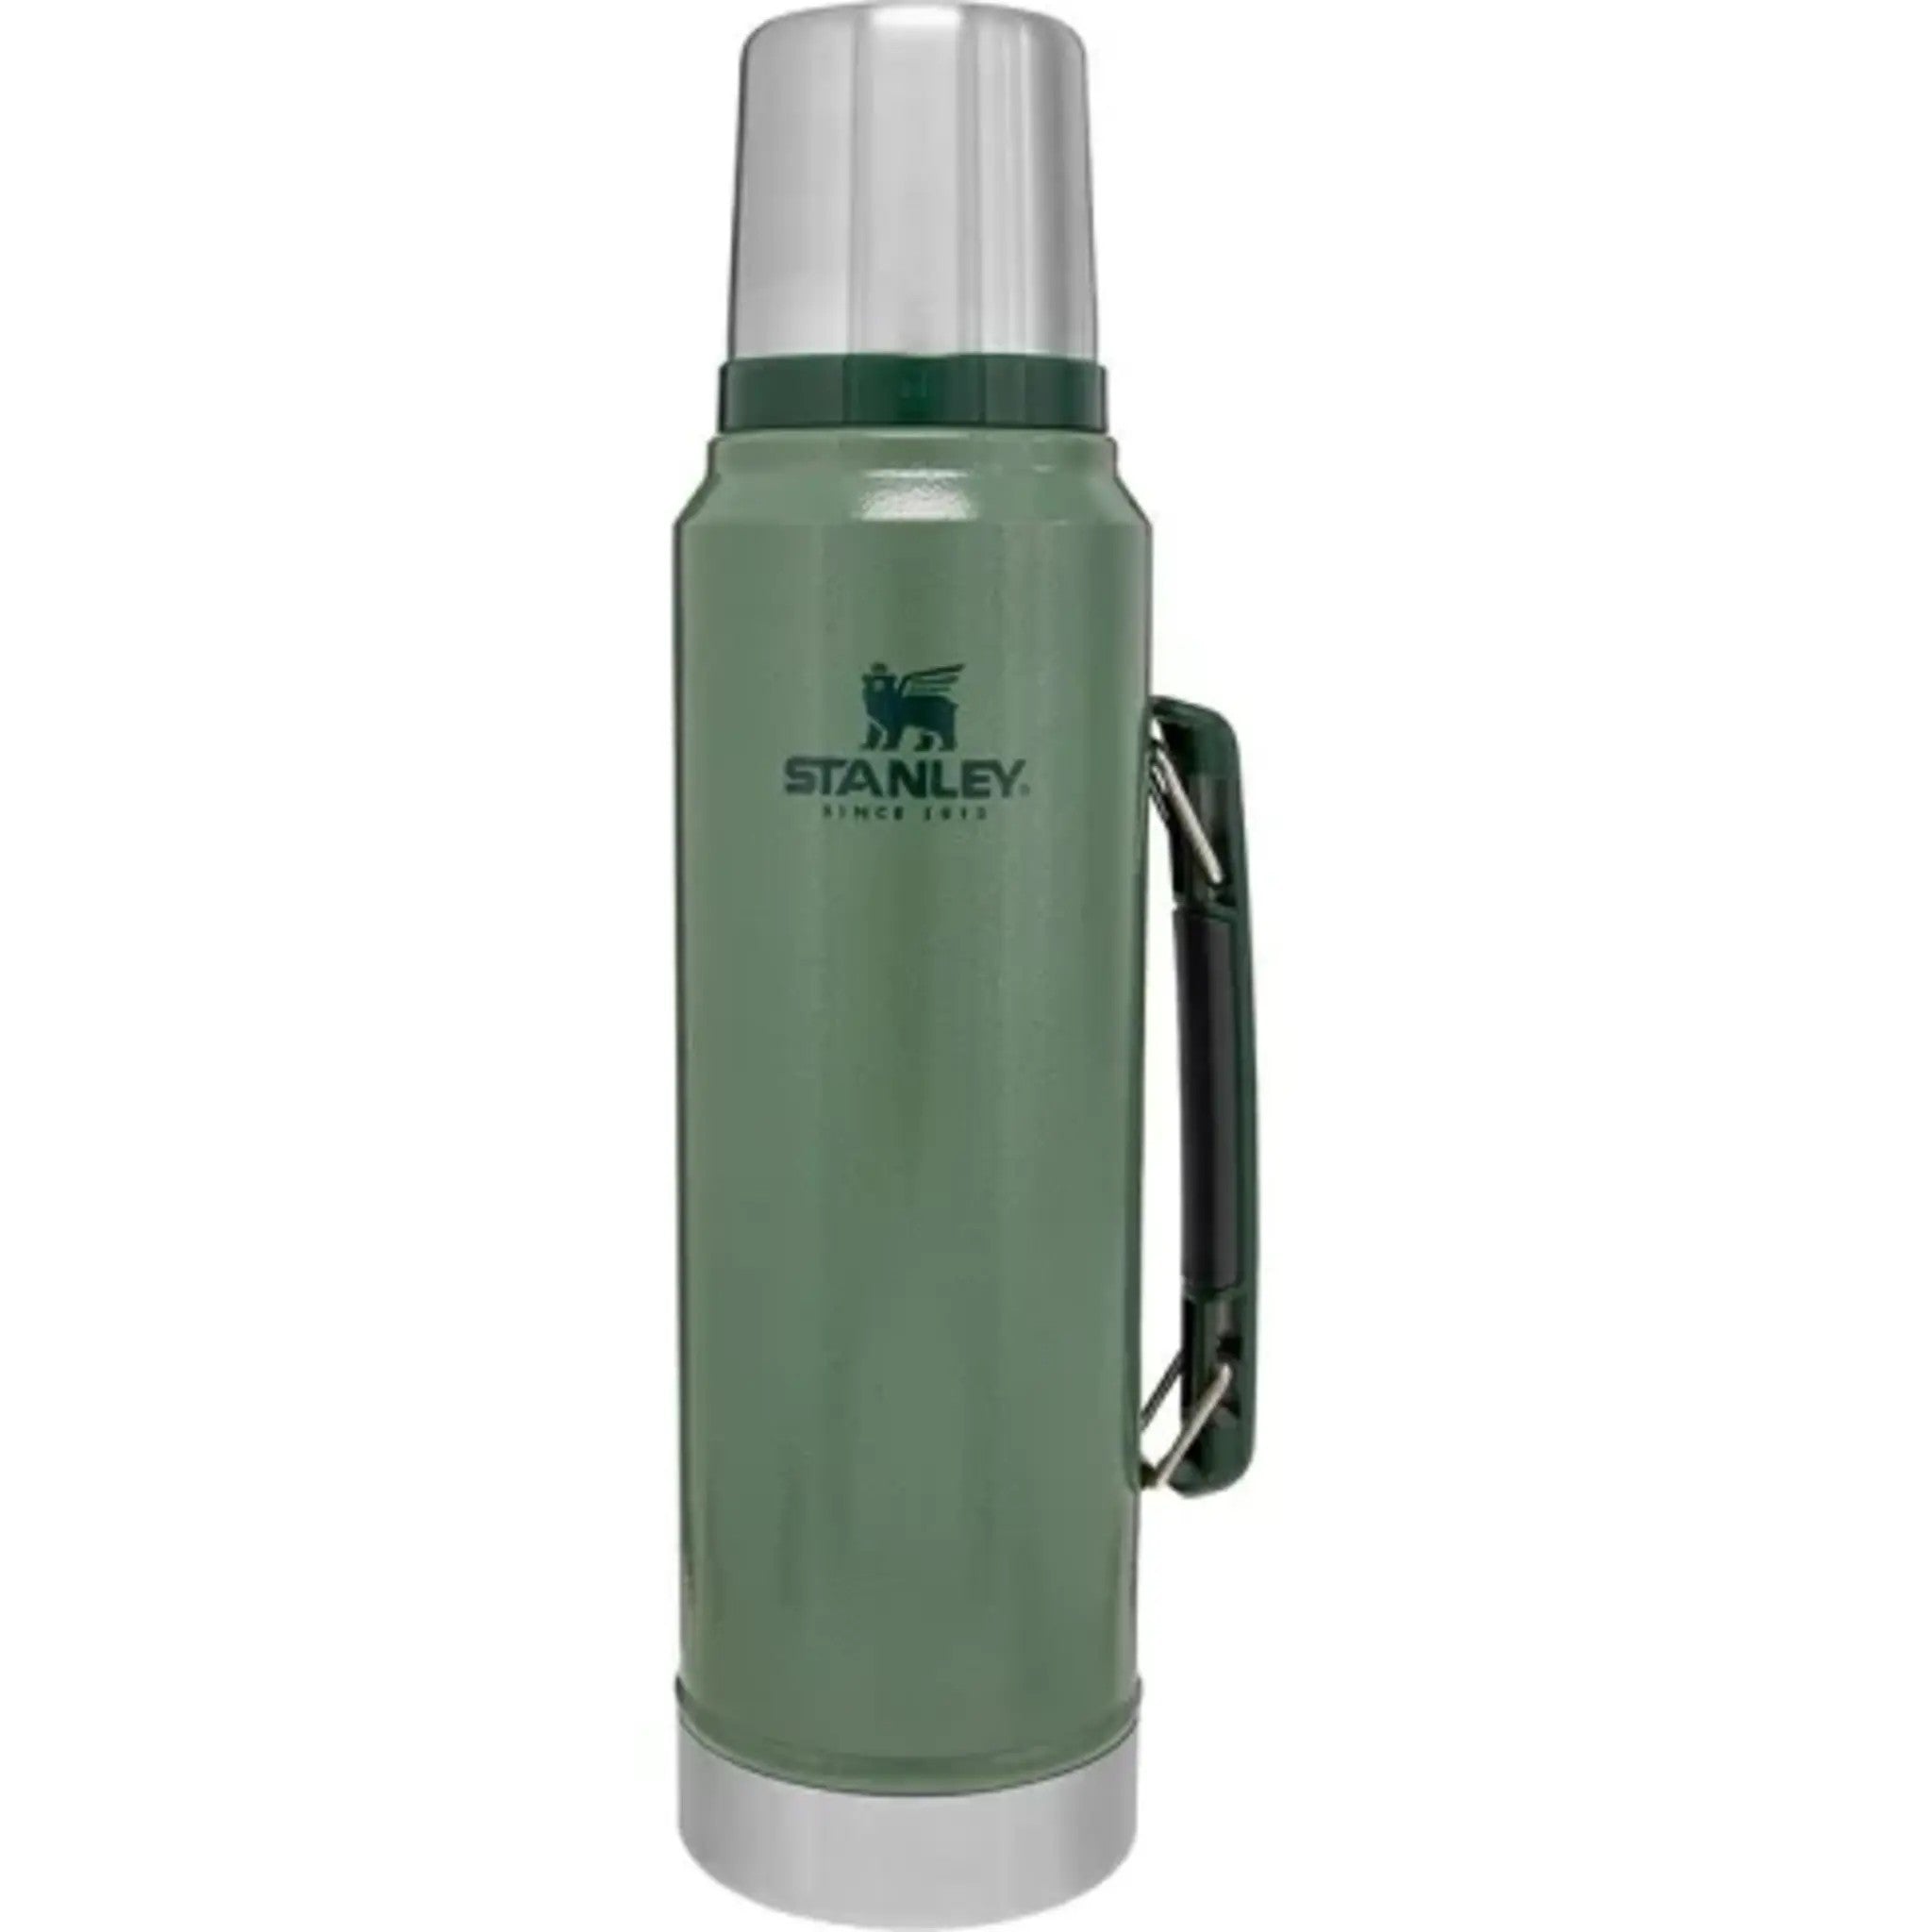 美國 Stanley 經典系列 真空保溫水瓶 錘紋綠 1L 盒裝 保溫水壺 10-08266-005